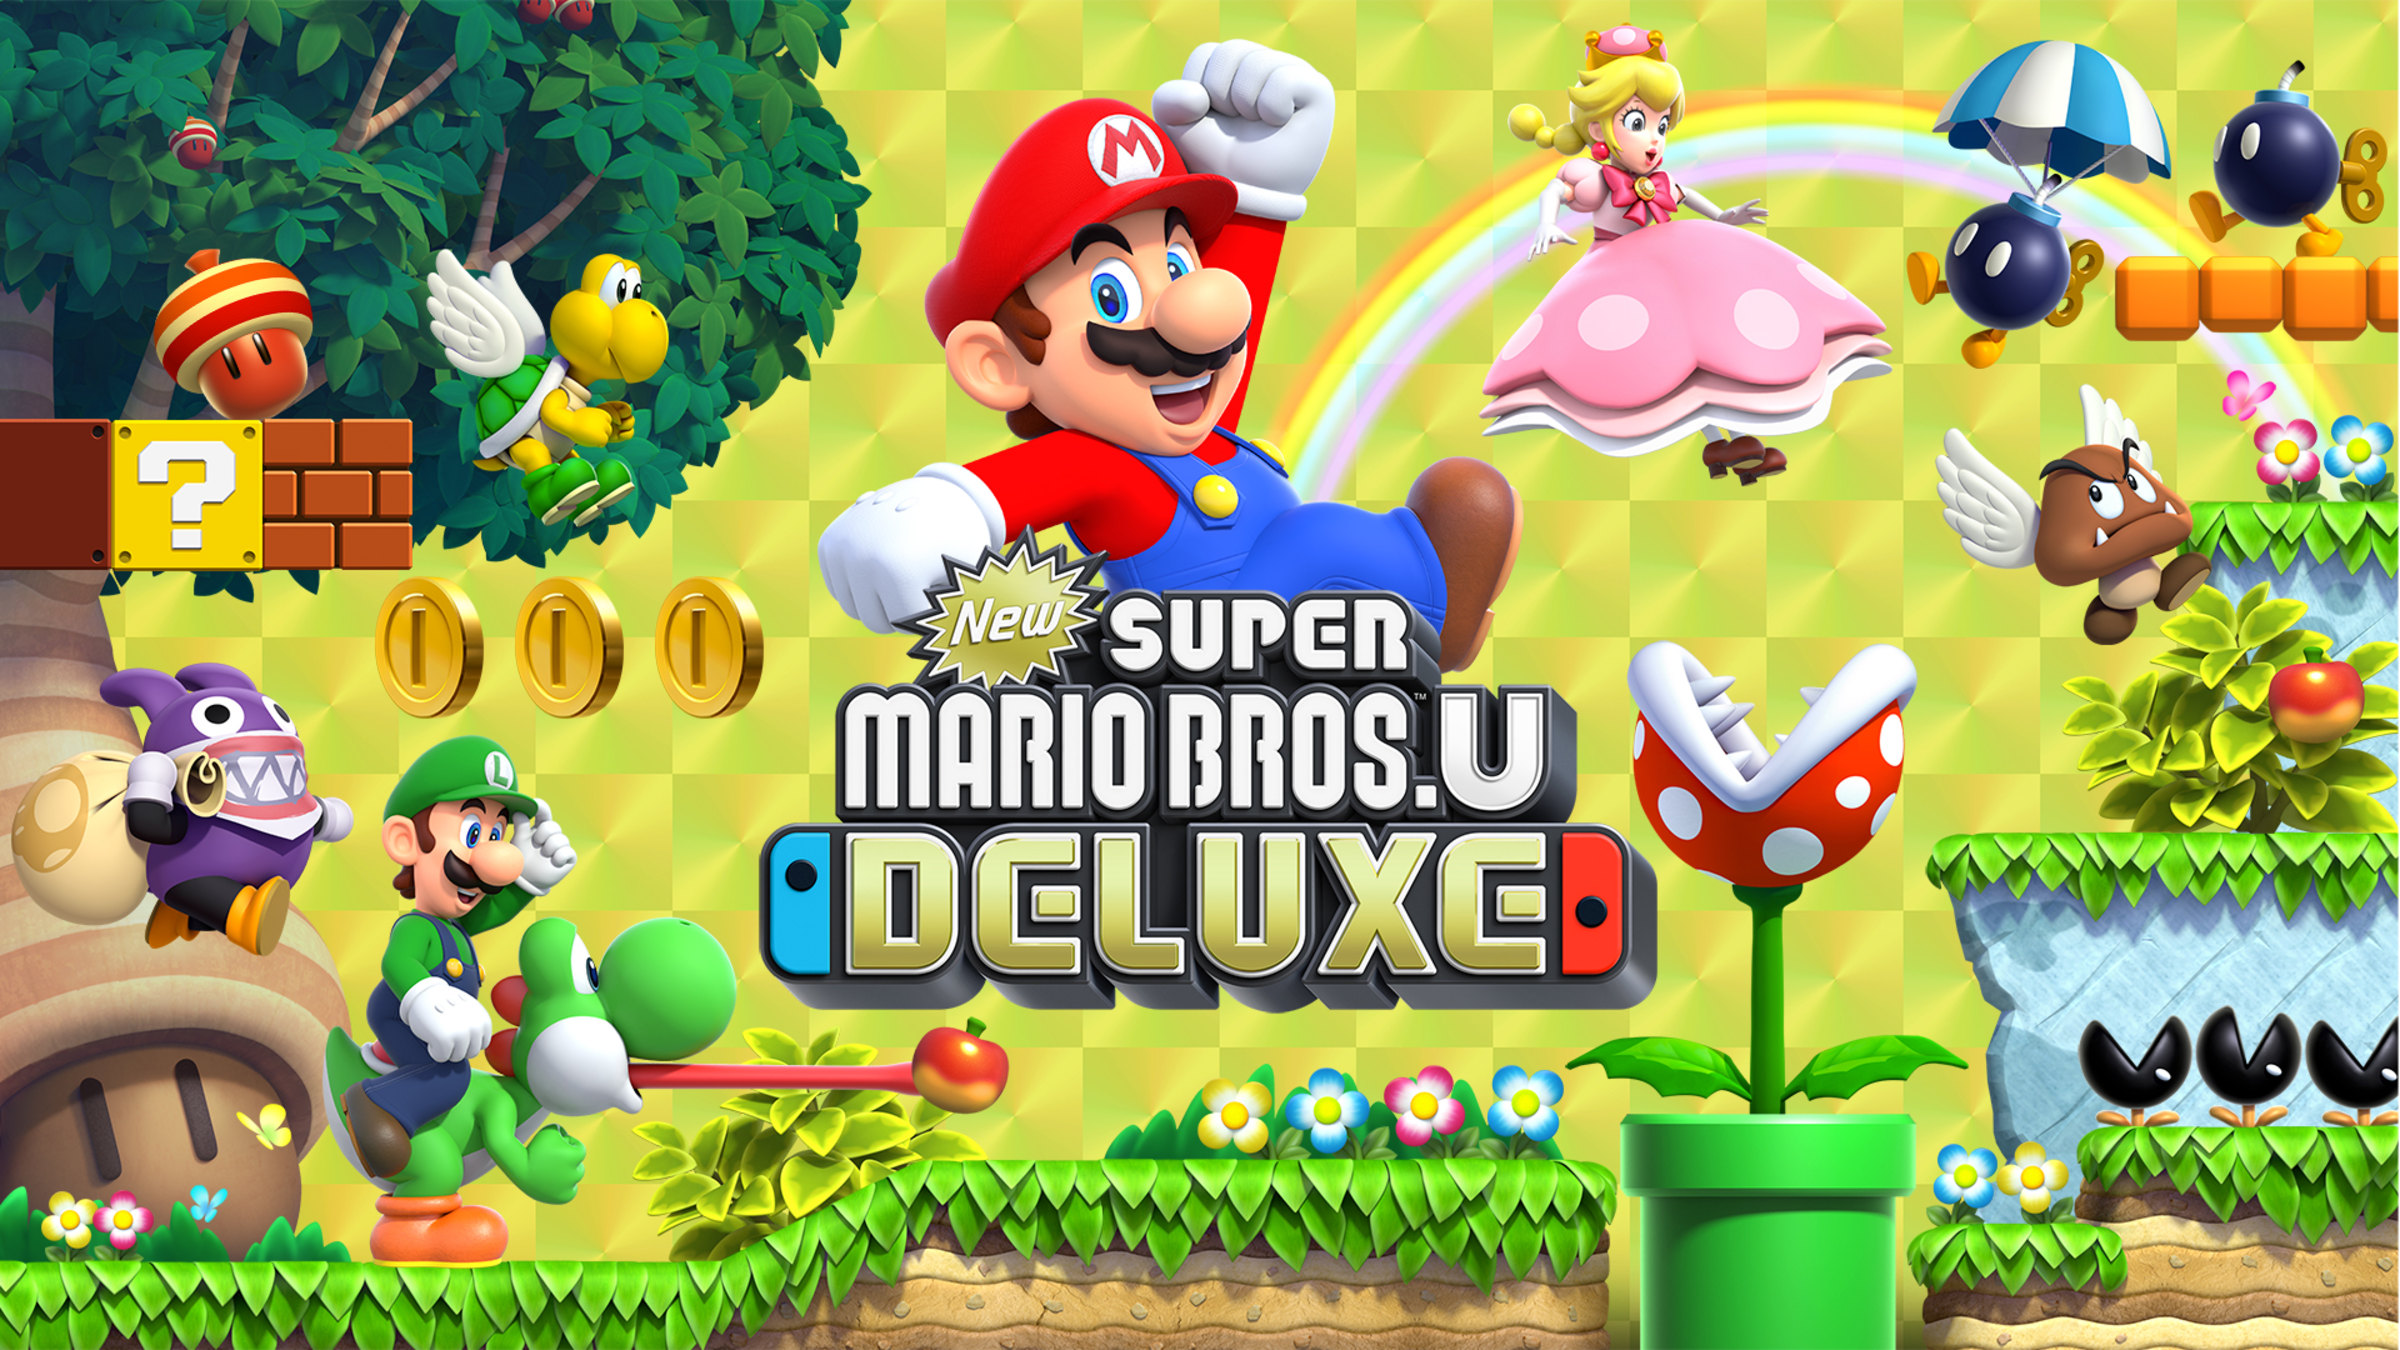 recoger Completamente seco hada New Super Mario Bros.™ U Deluxe for Nintendo Switch - Nintendo Official Site